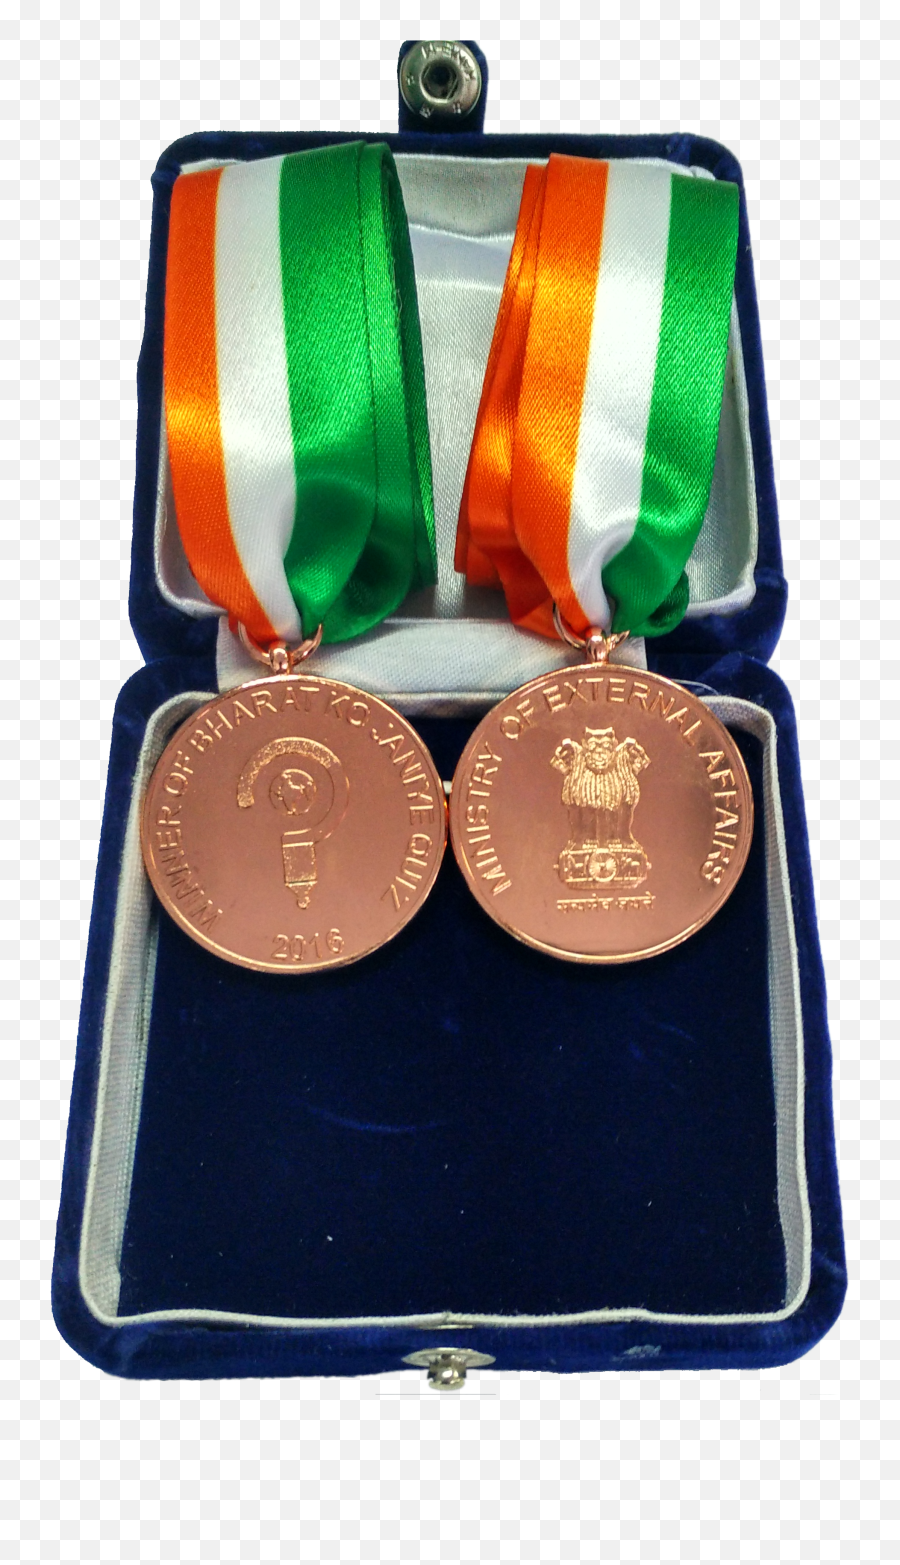 Bronze Medal Png - Medals Gold Medal 1825056 Vippng Gold Medal,Gold Medal Png